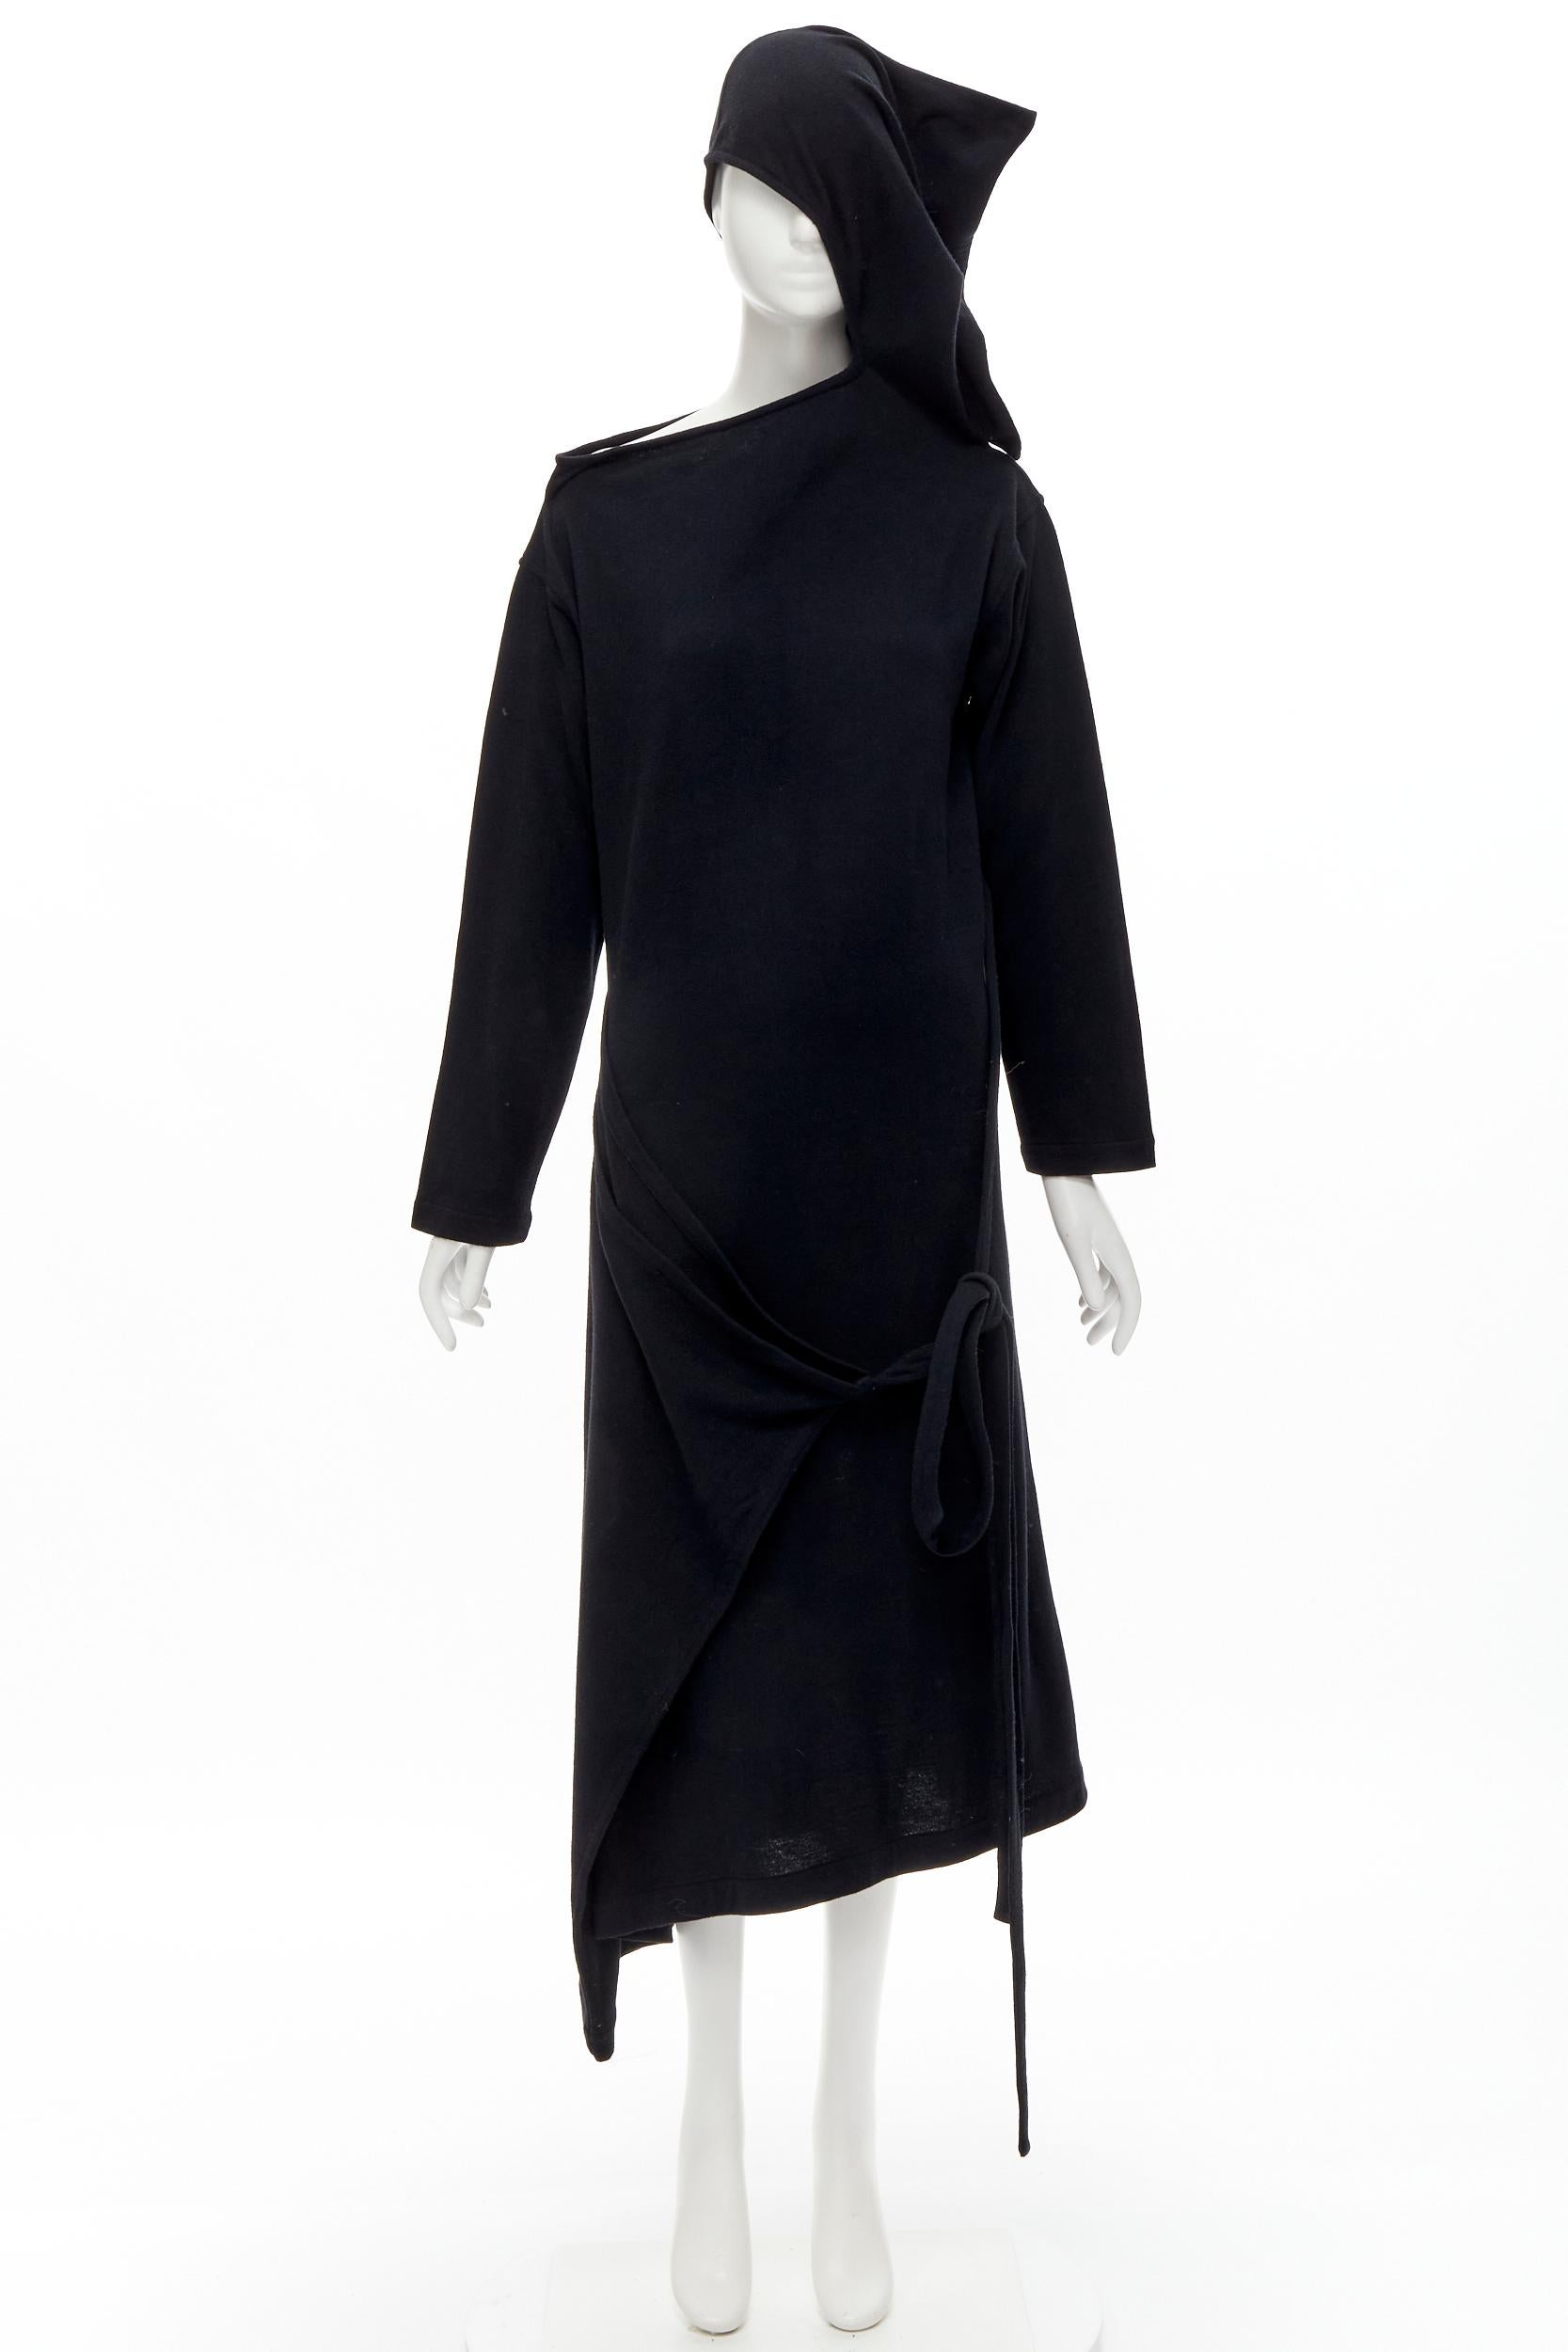 rare COMME DES GARCONS 1980's Vintage black asymmetric neckline hooded dress M For Sale 6